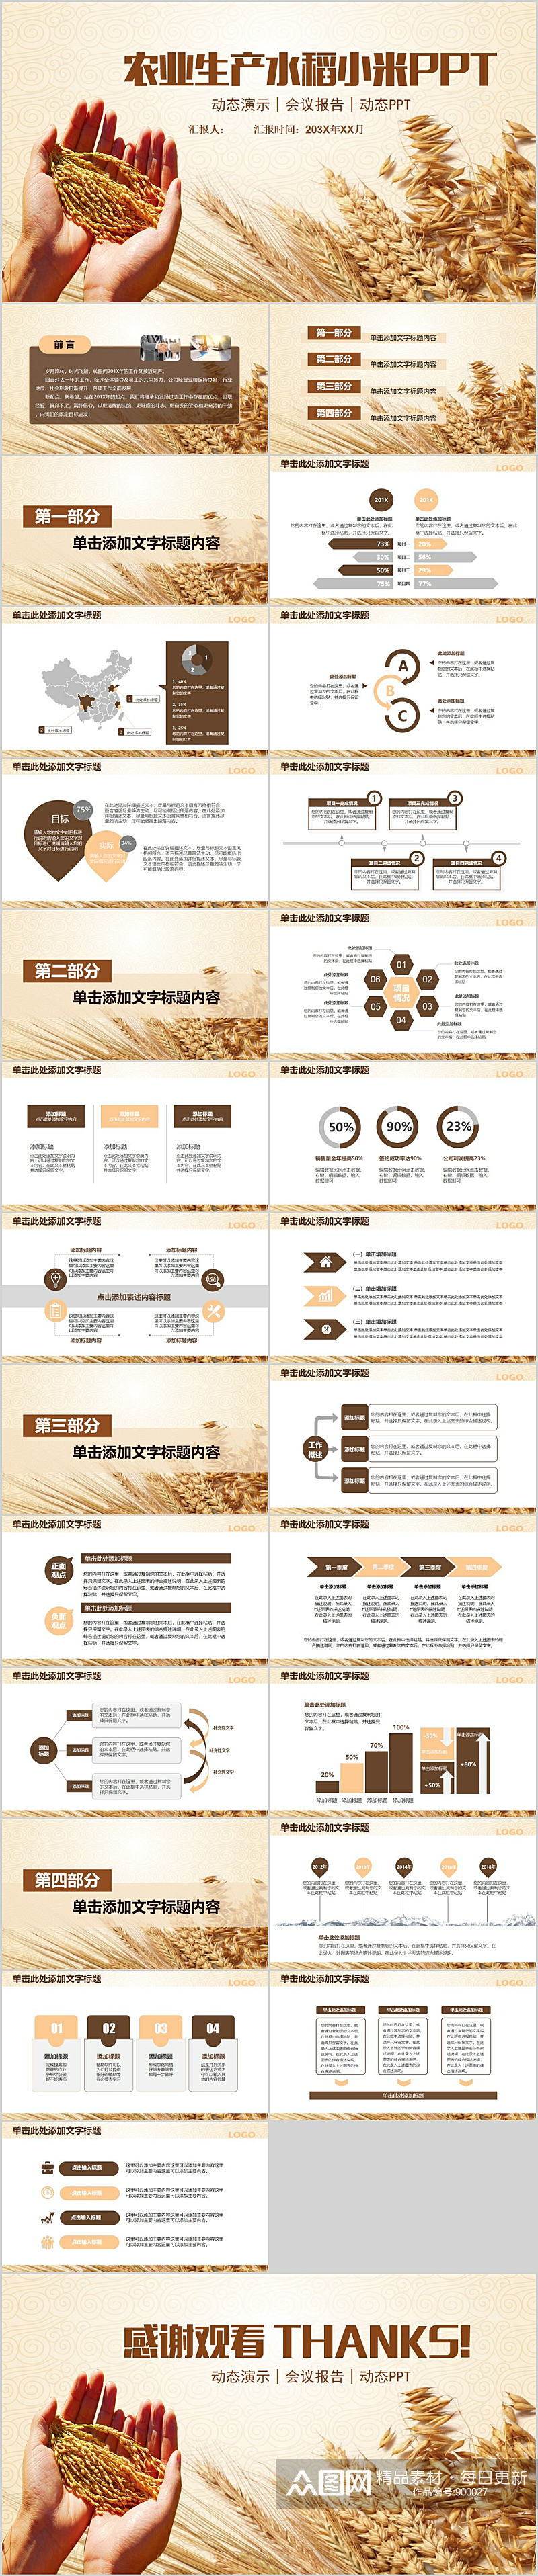 农业生产水稻小米PPT素材